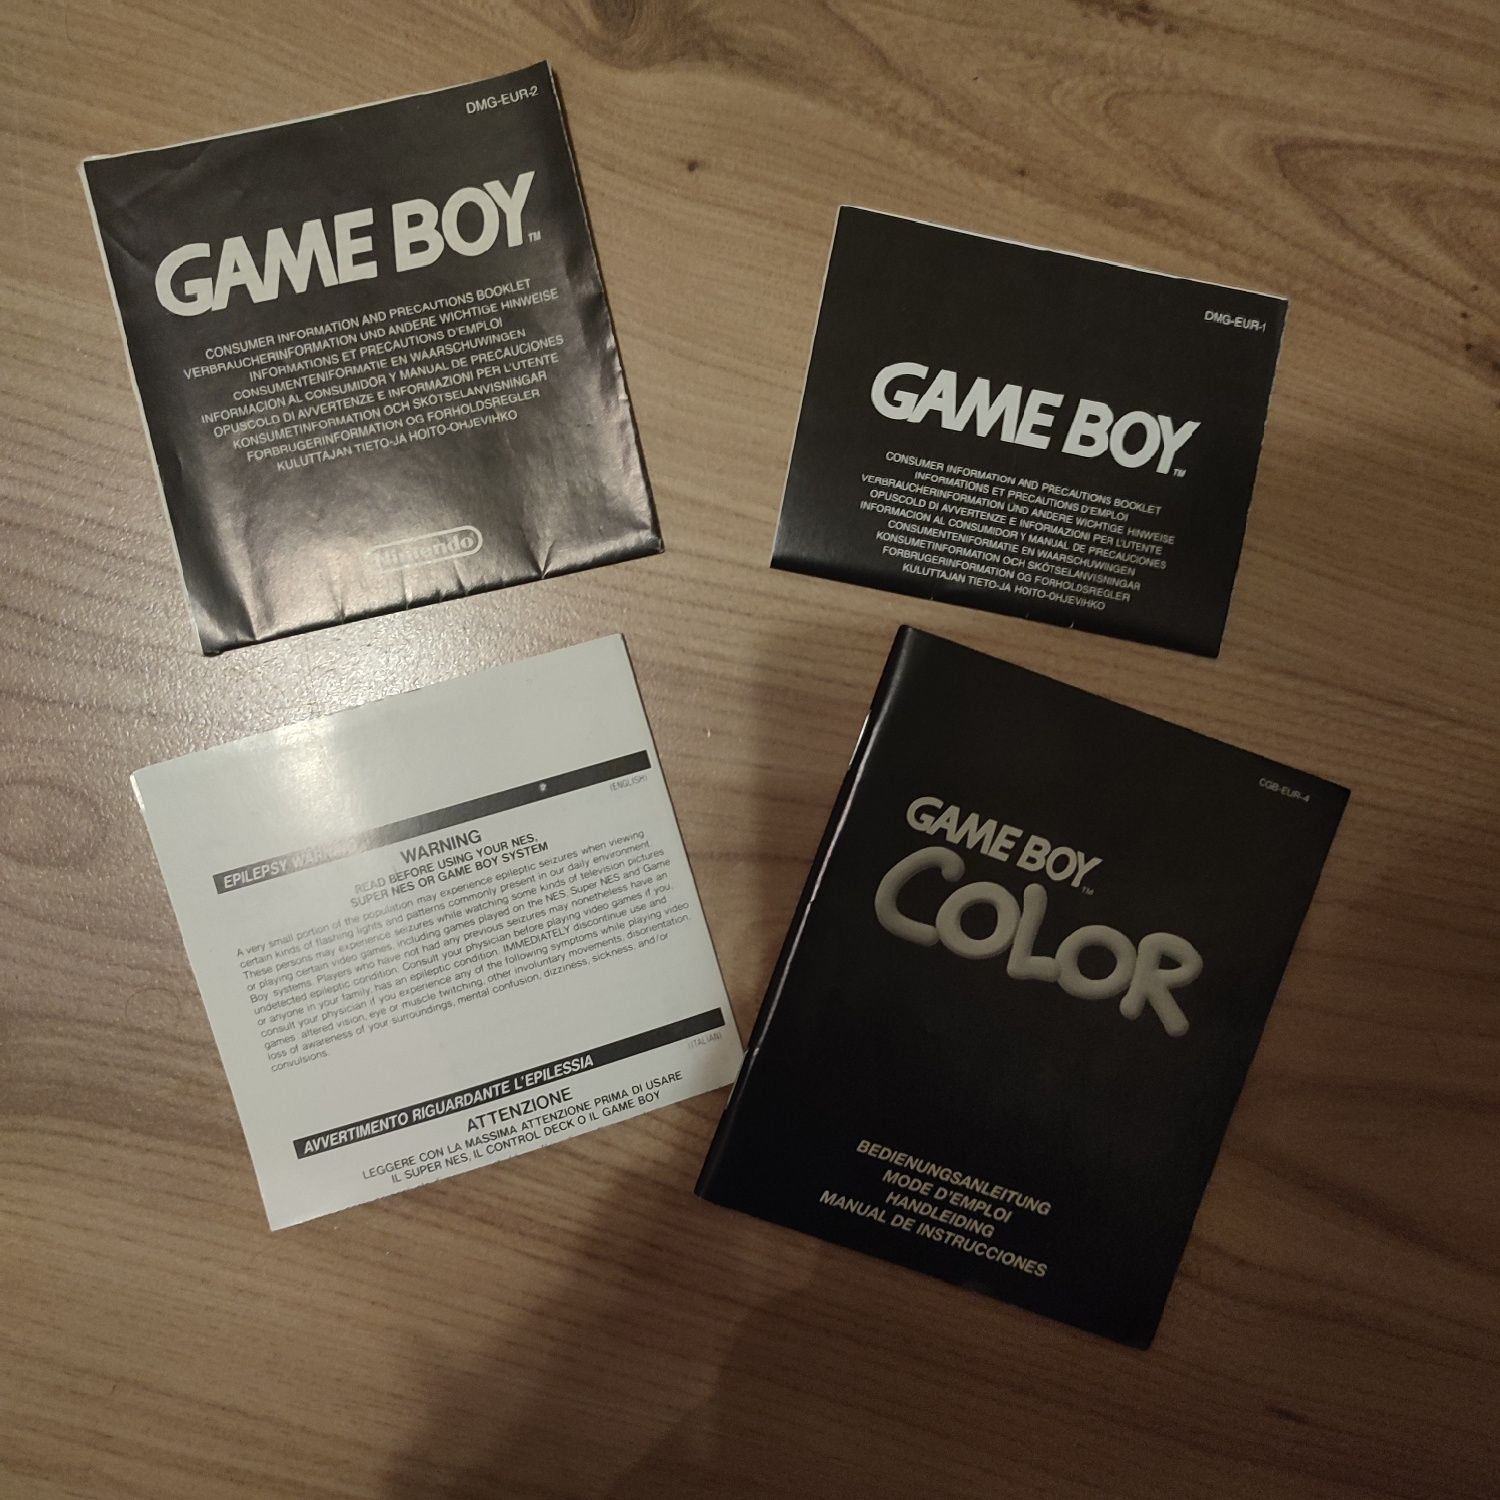 Konsola Game Boy Color
Stan bardzo dobry, używana
Działa bez zarzutu (